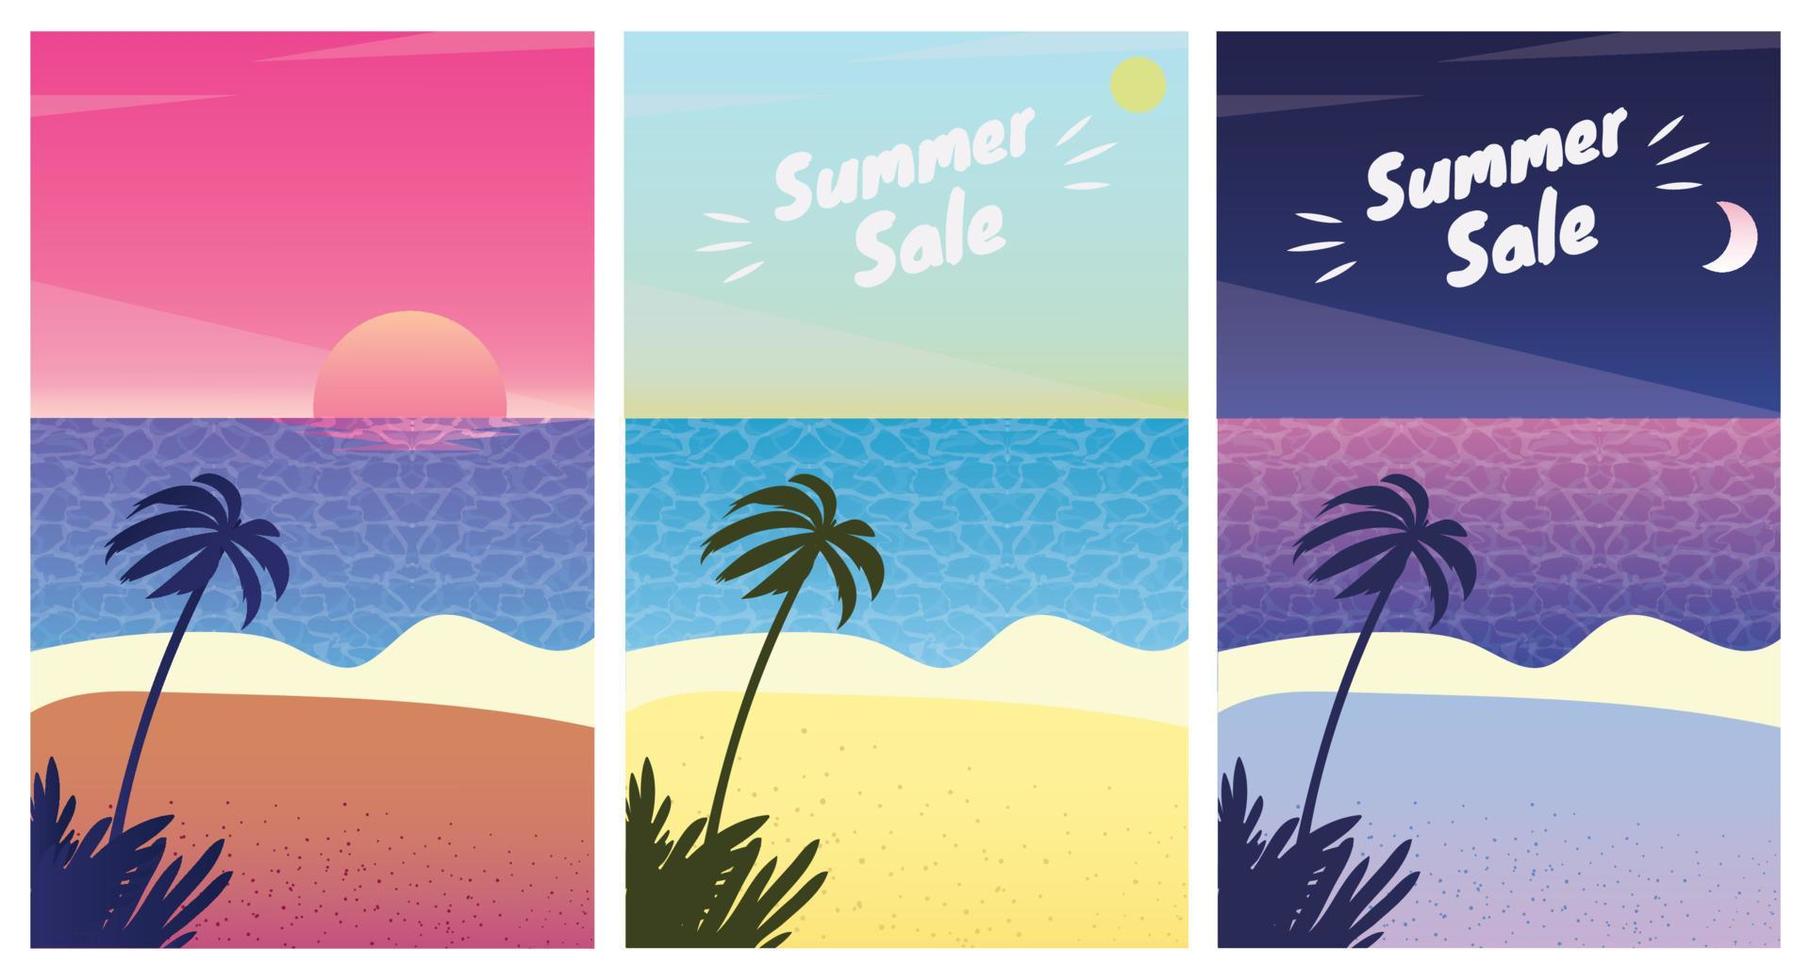 paysage de plage d'été au lever, au coucher du soleil et à la nuit. été, vente, saison, bannières, ensemble, modèle, vecteur, illustration vecteur